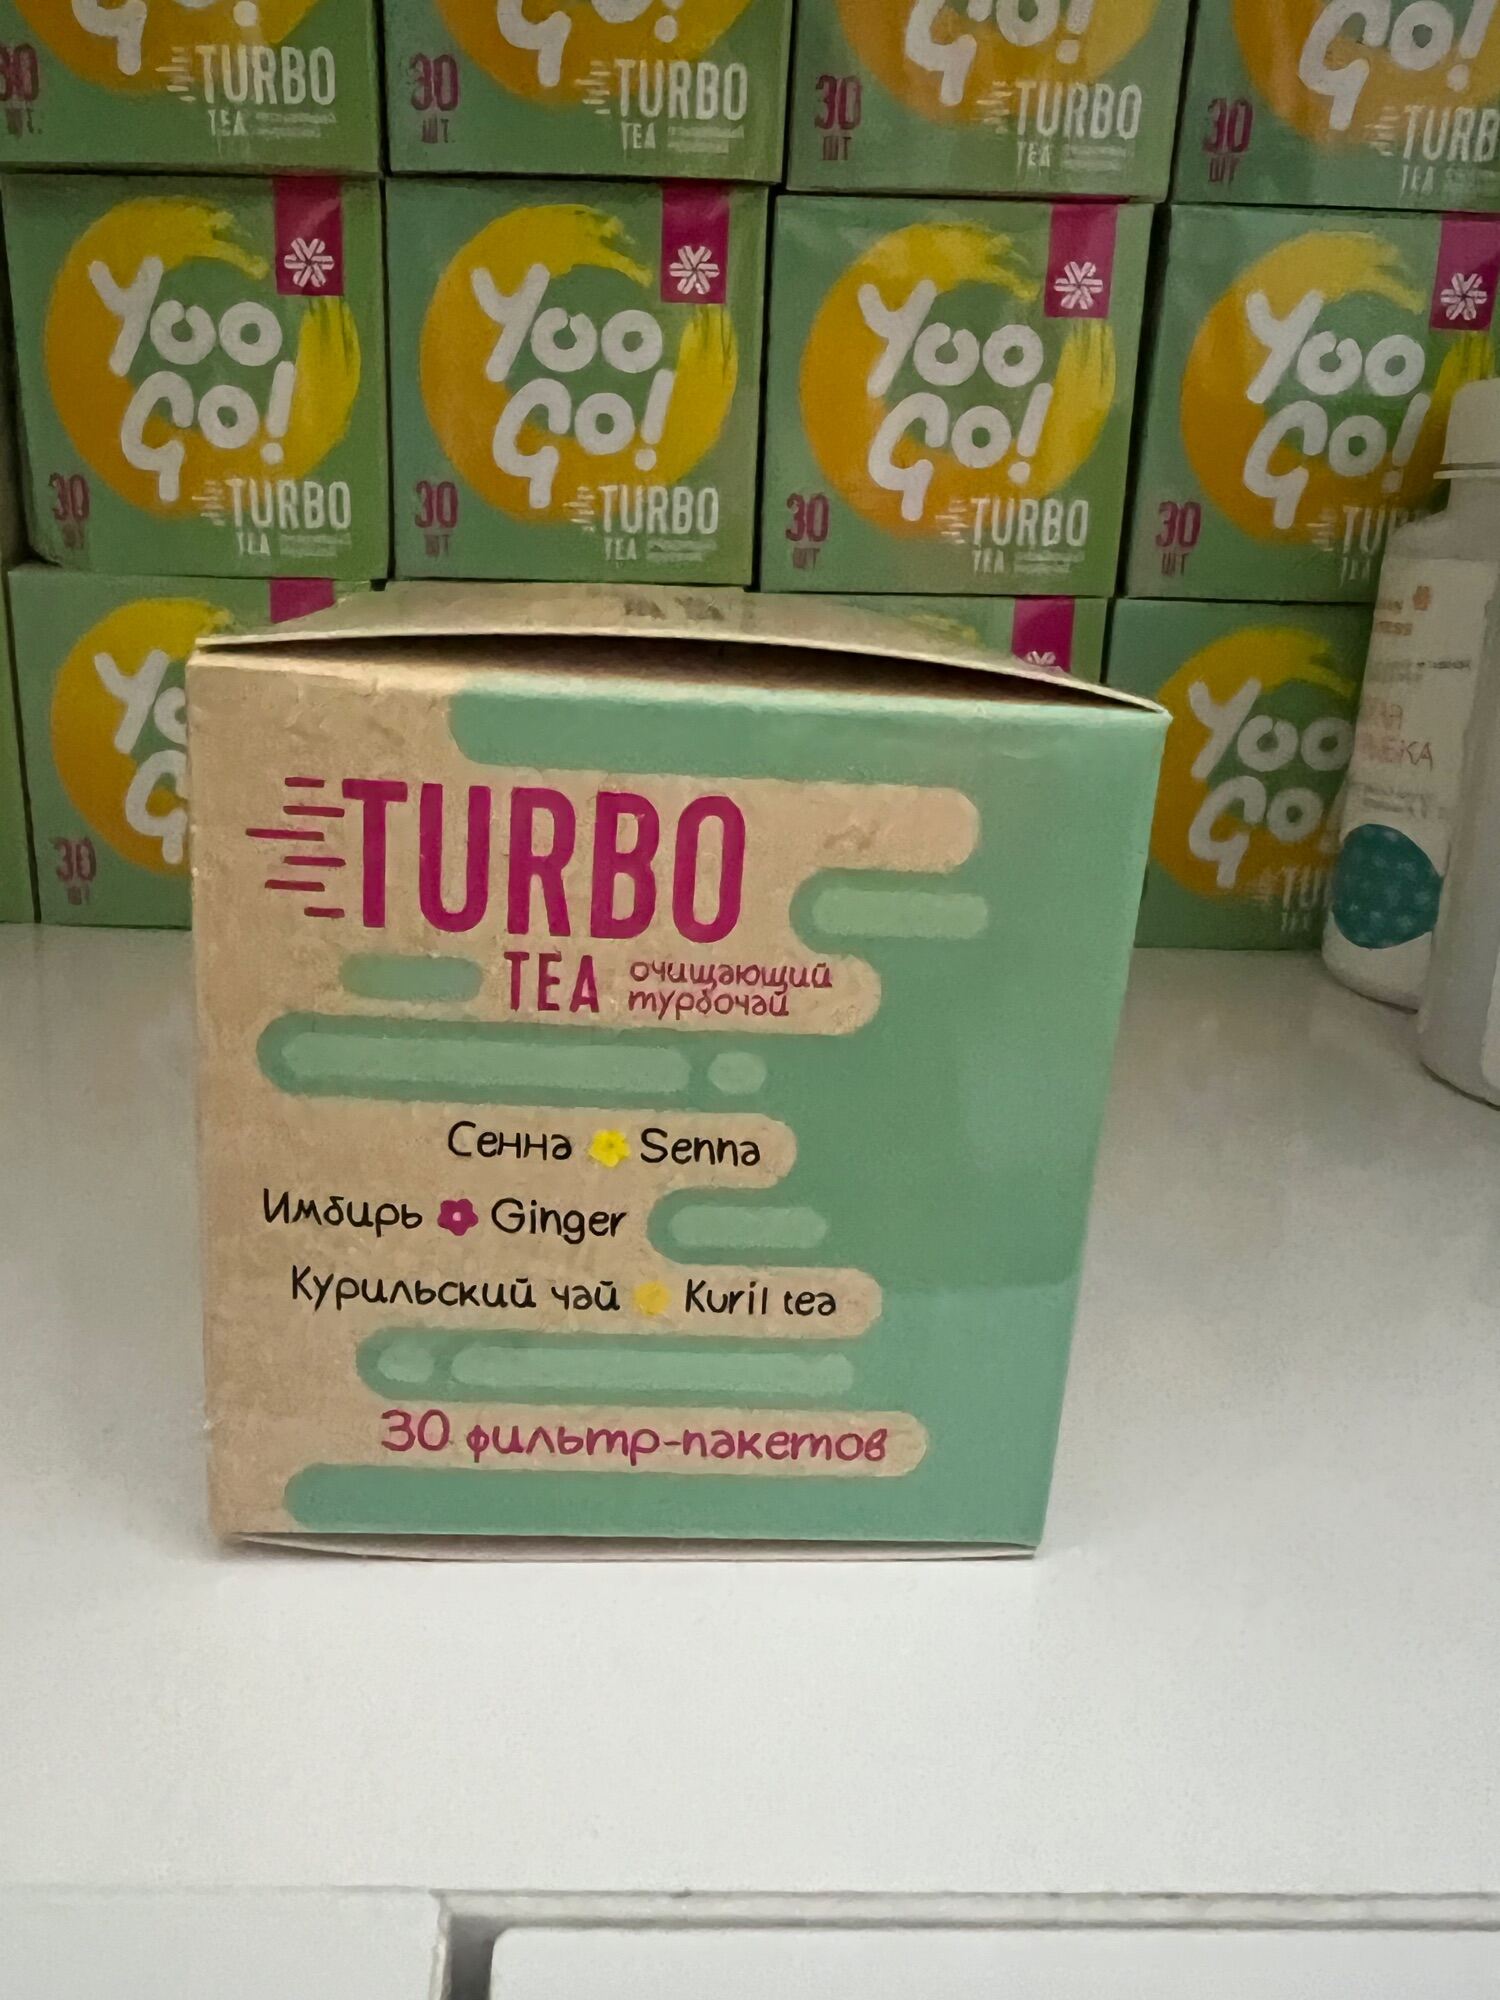 Thực phẩm bảo vệ sức khỏe Trà thảo mộc YOO GO Turbo tea siberian kho Nga k bọc nilong bên ngoài